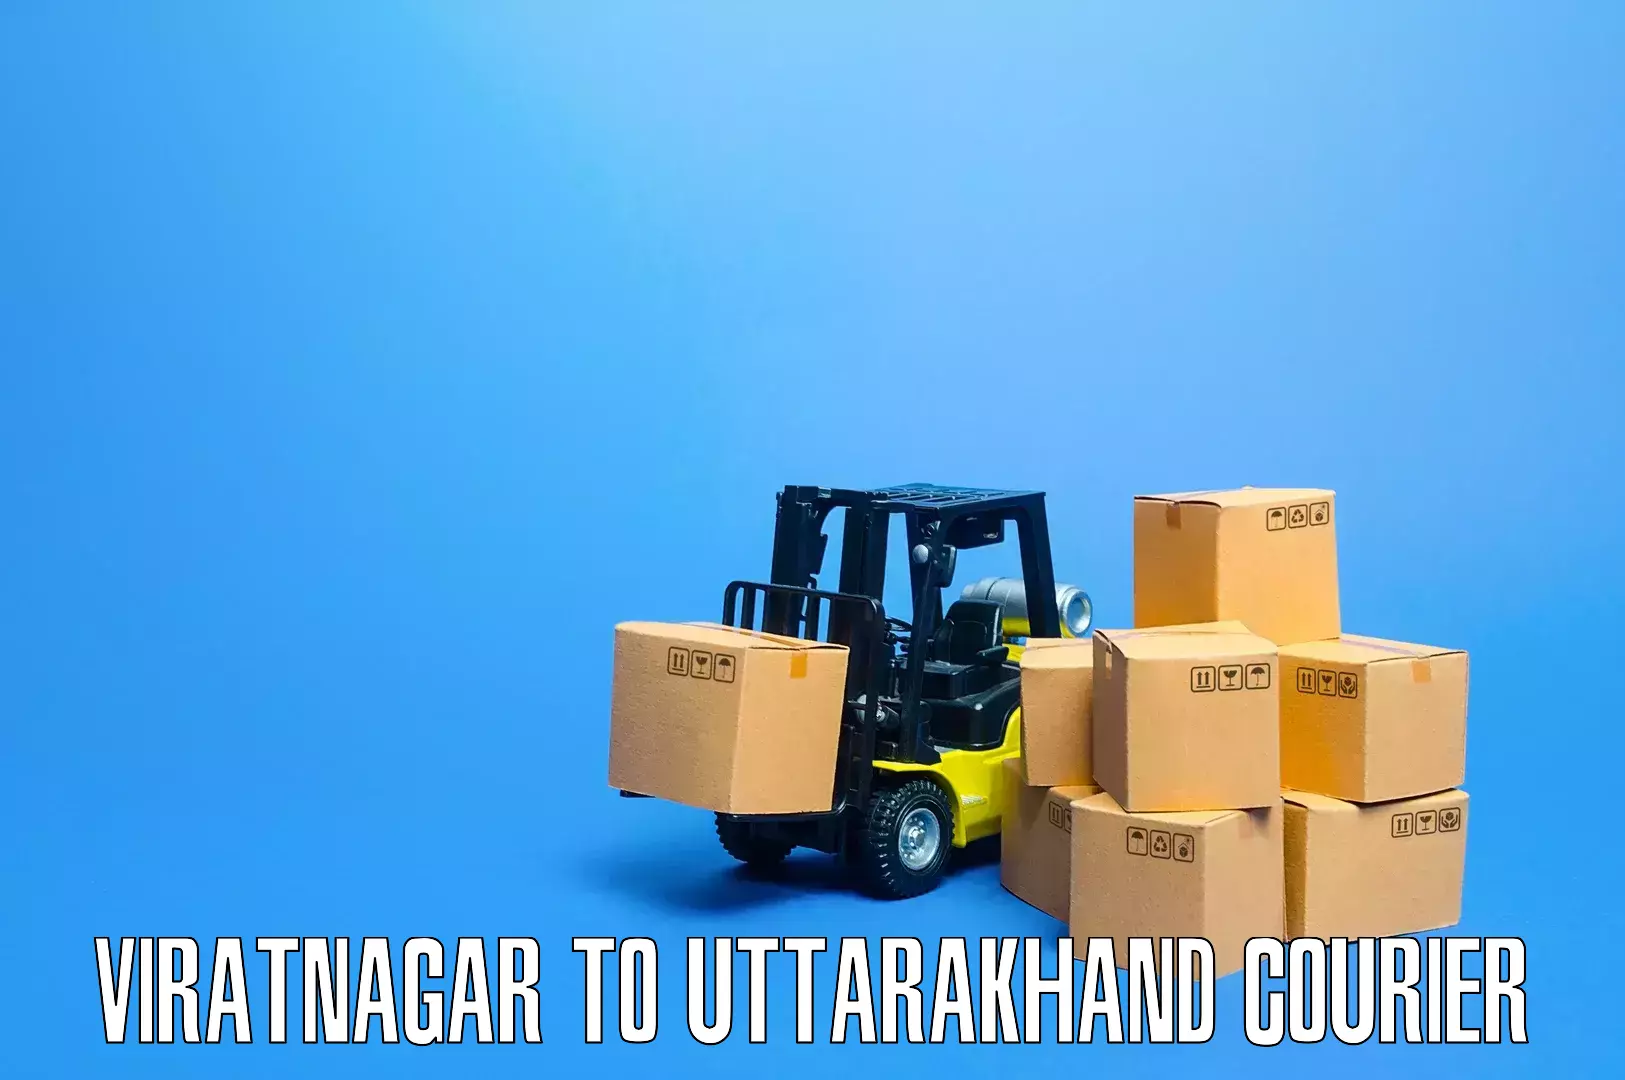 Trusted moving solutions Viratnagar to Nainital